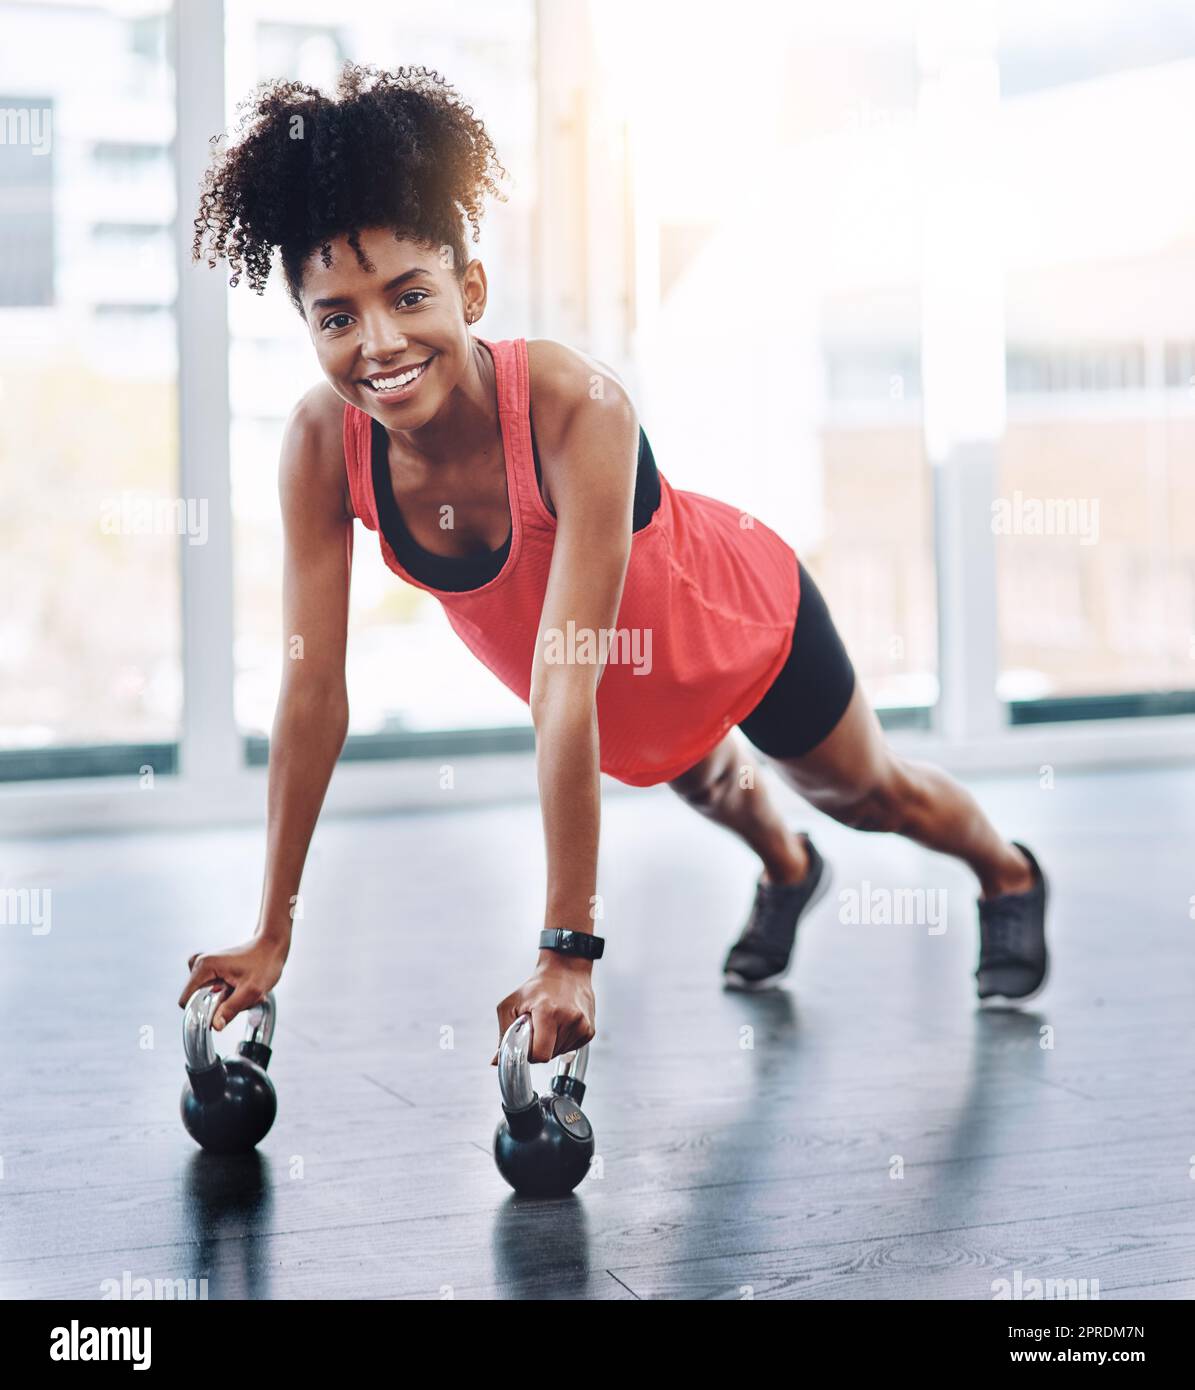 Rimanere in forma è più facile di quanto pensiate. Una giovane donna attraente che fa i push-up in uno studio. Foto Stock